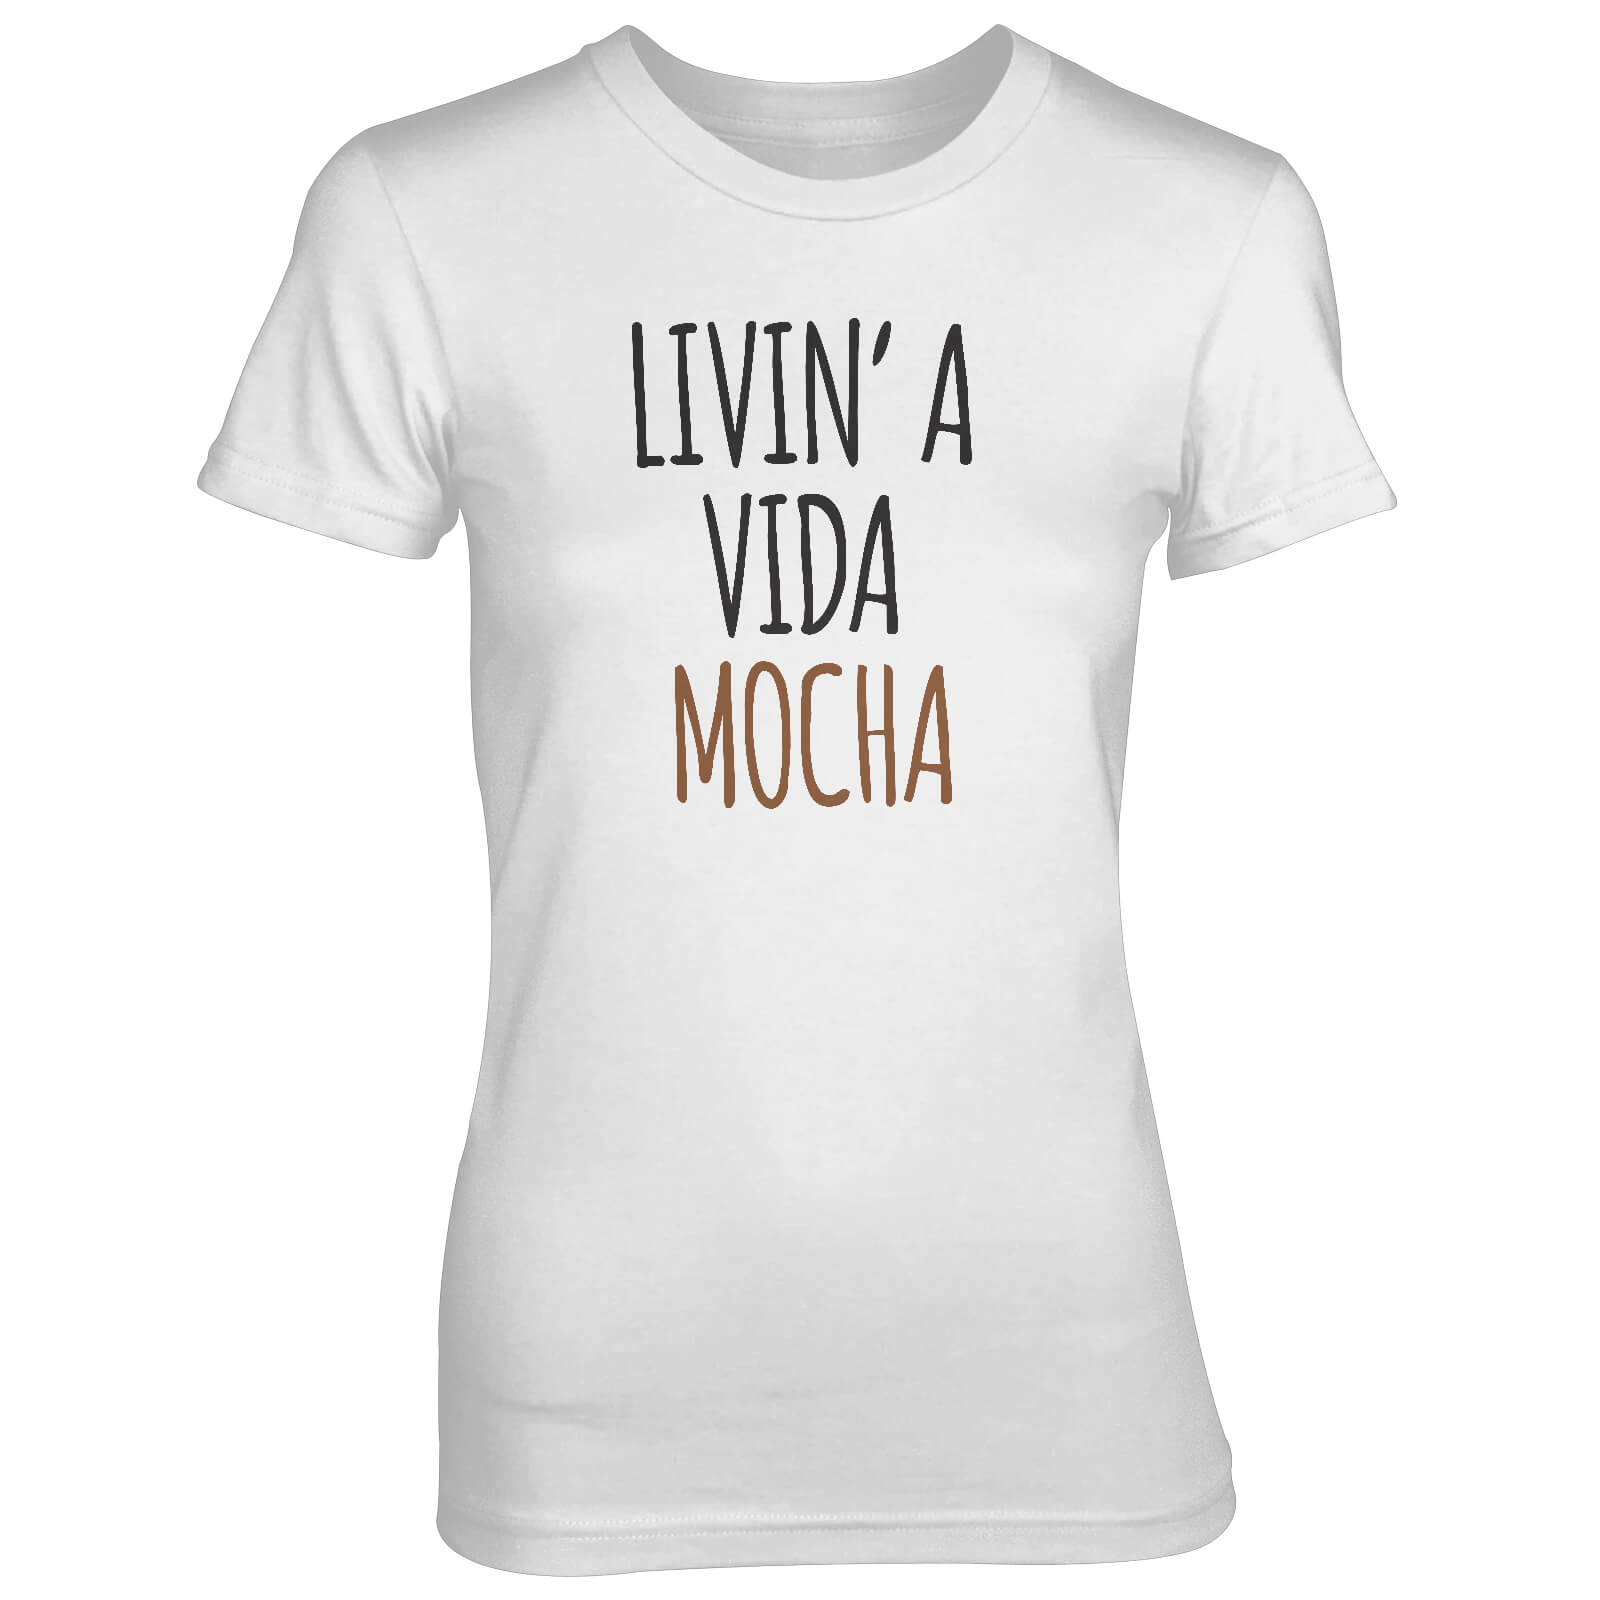 Livin' A Vida Mocha Women's White T-Shirt - S - White